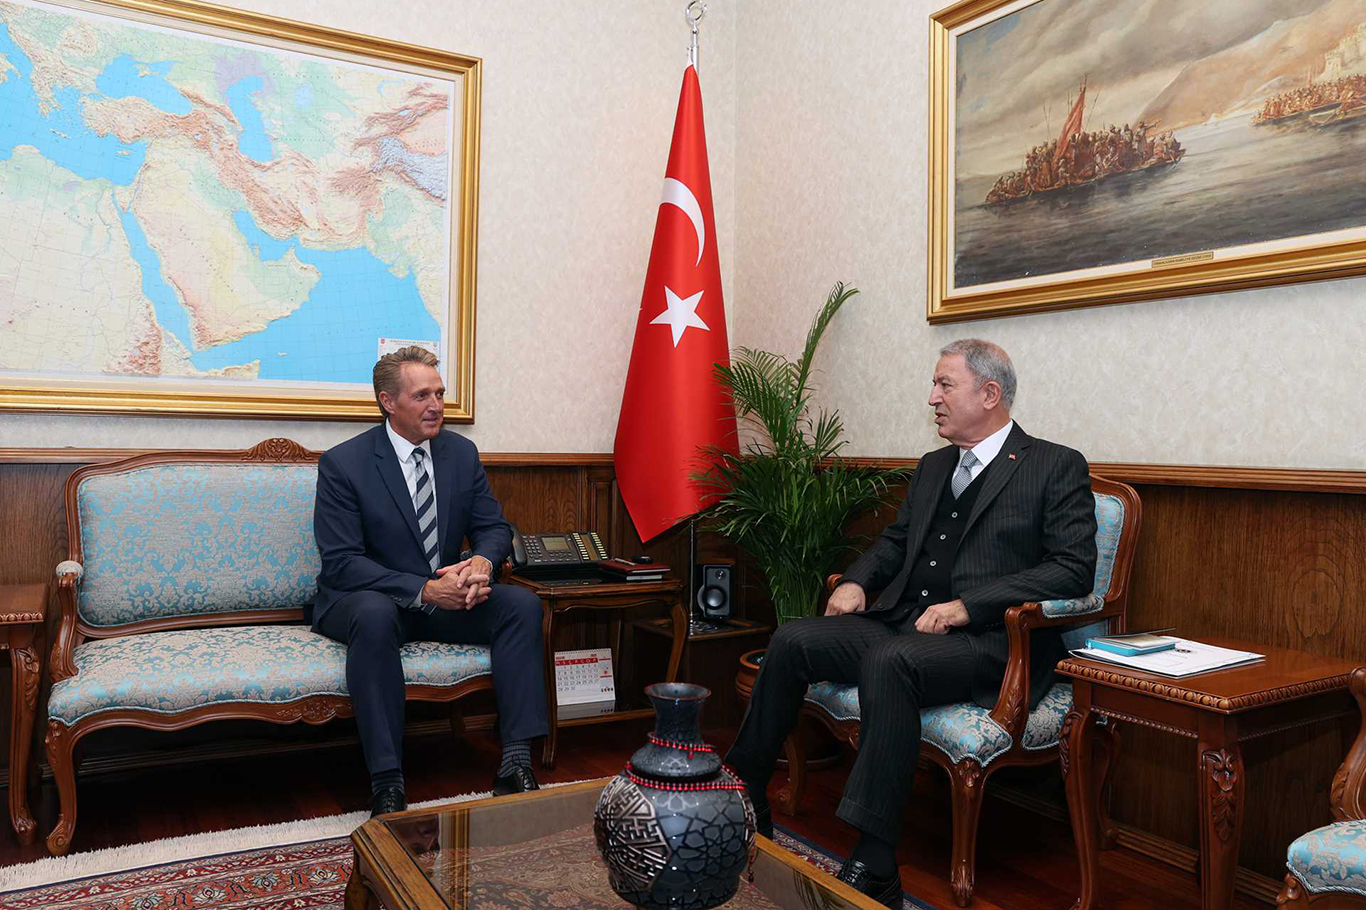 Bakan Akar, ABD'nin Ankara Büyükelçisi Flake ile görüştü